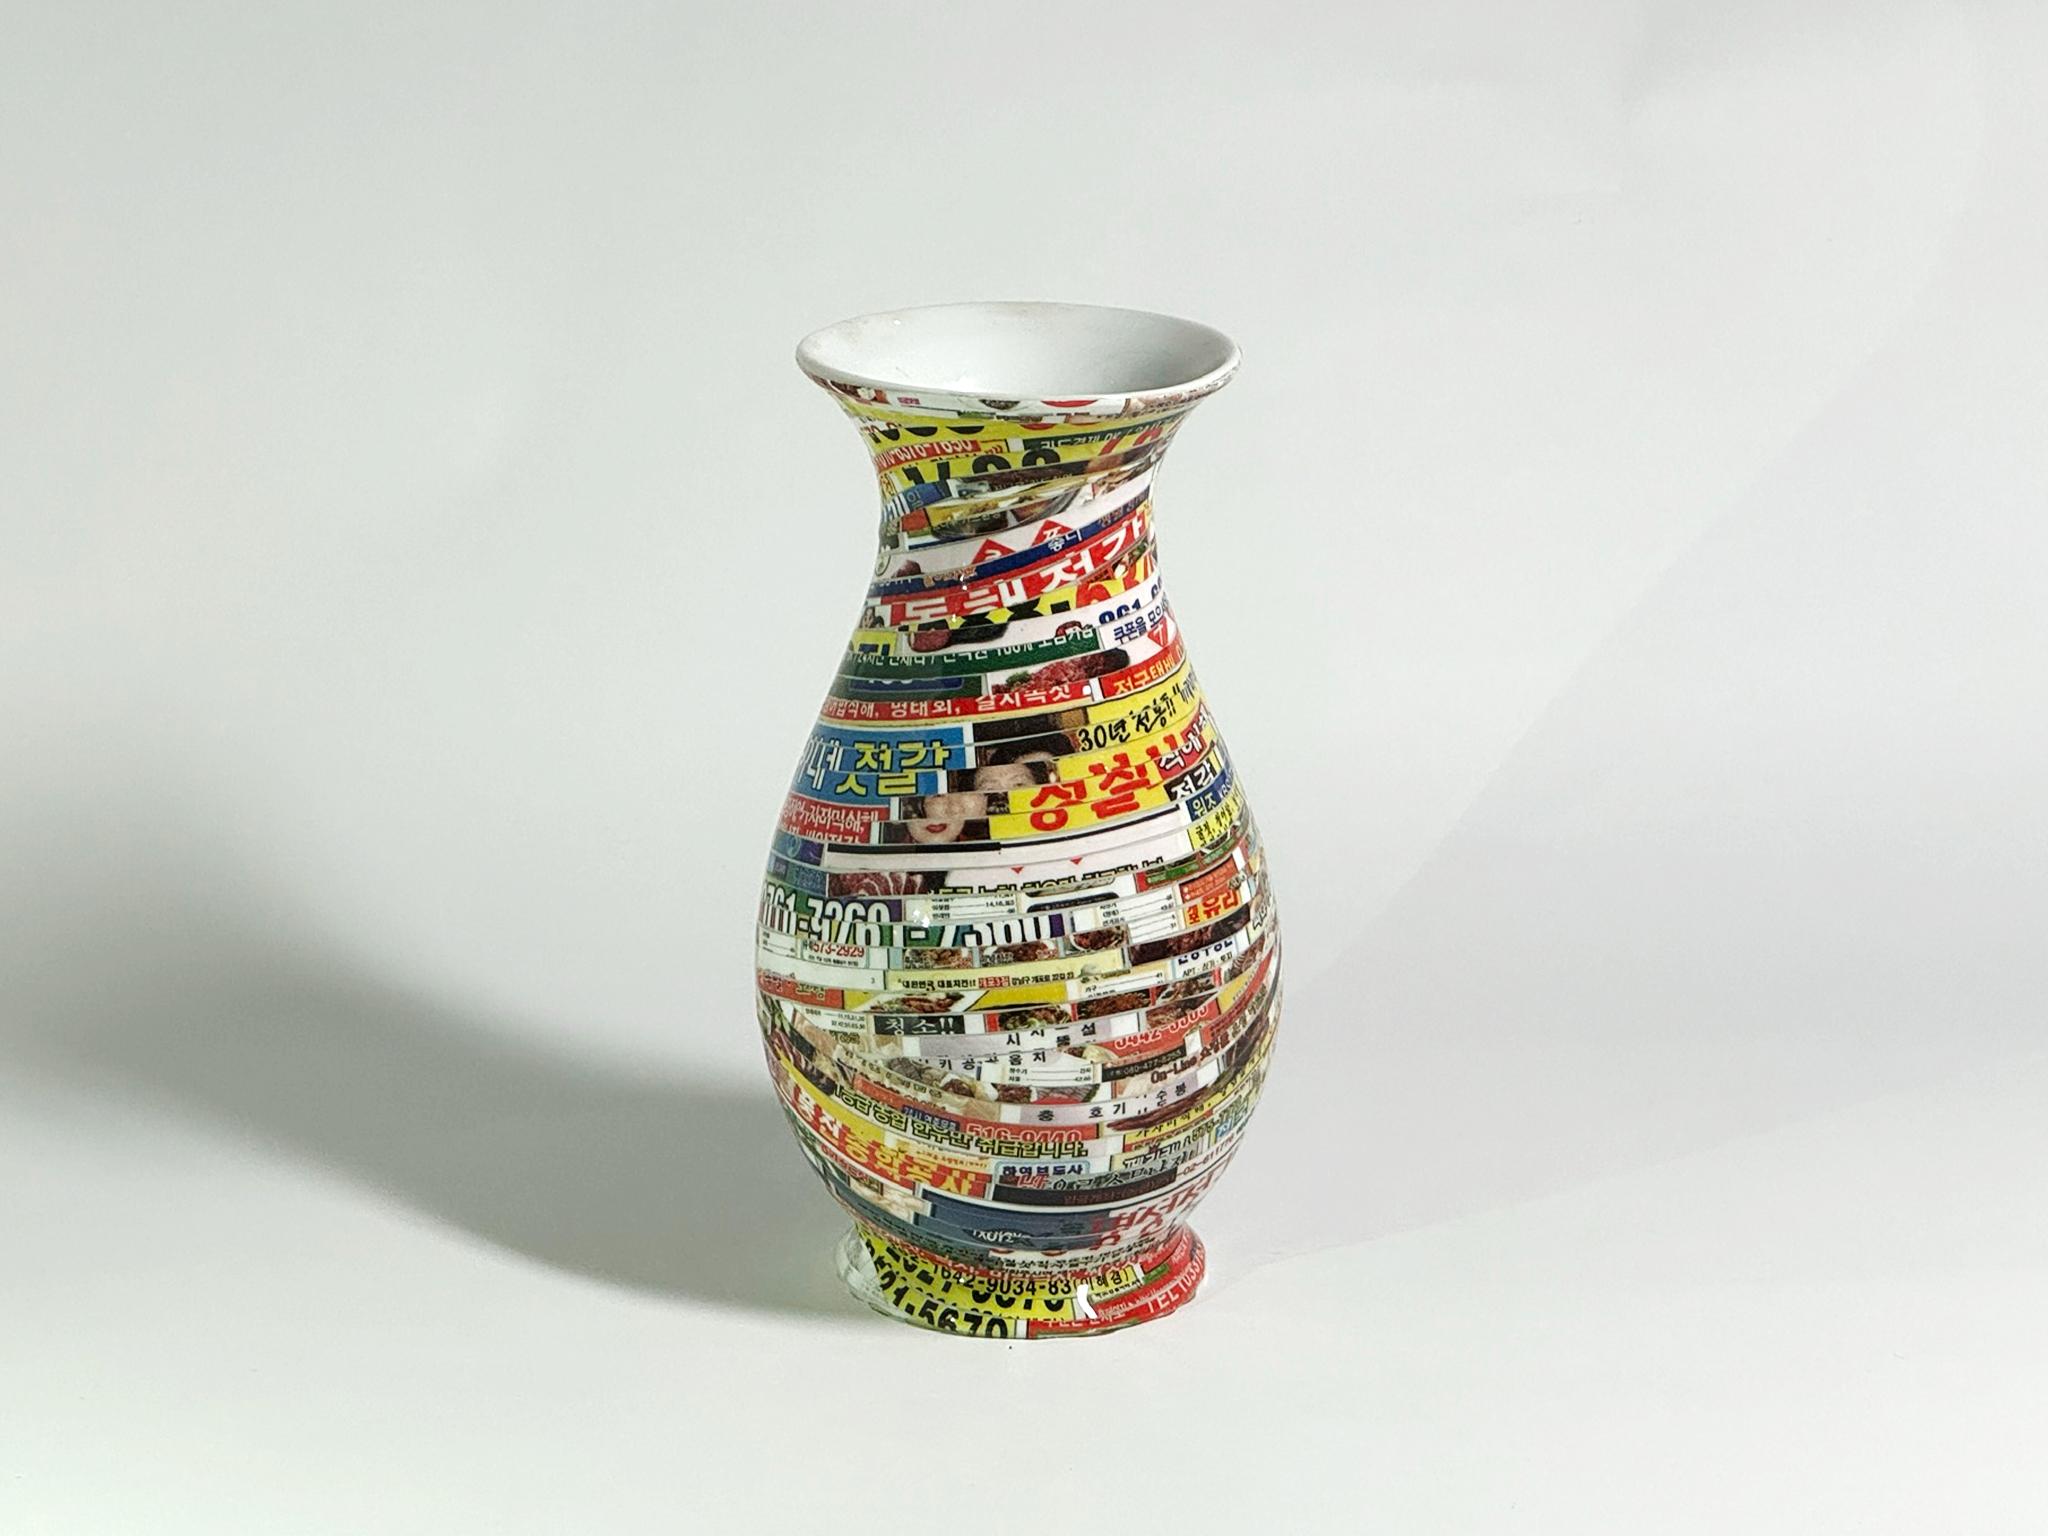 Vase Jjirasi #06, 2021 par Yongwon Noh
Extrait de la série Jjirasi 
Céramique, PVC autocollant et résine
Taille : 6.6 in. H x 3.5 in. W x 3.5 in. D
Poids : 3kg sans emballage
Pièce unique
Signature inscrite sur le fond du vase

Jjirasi Vase explore